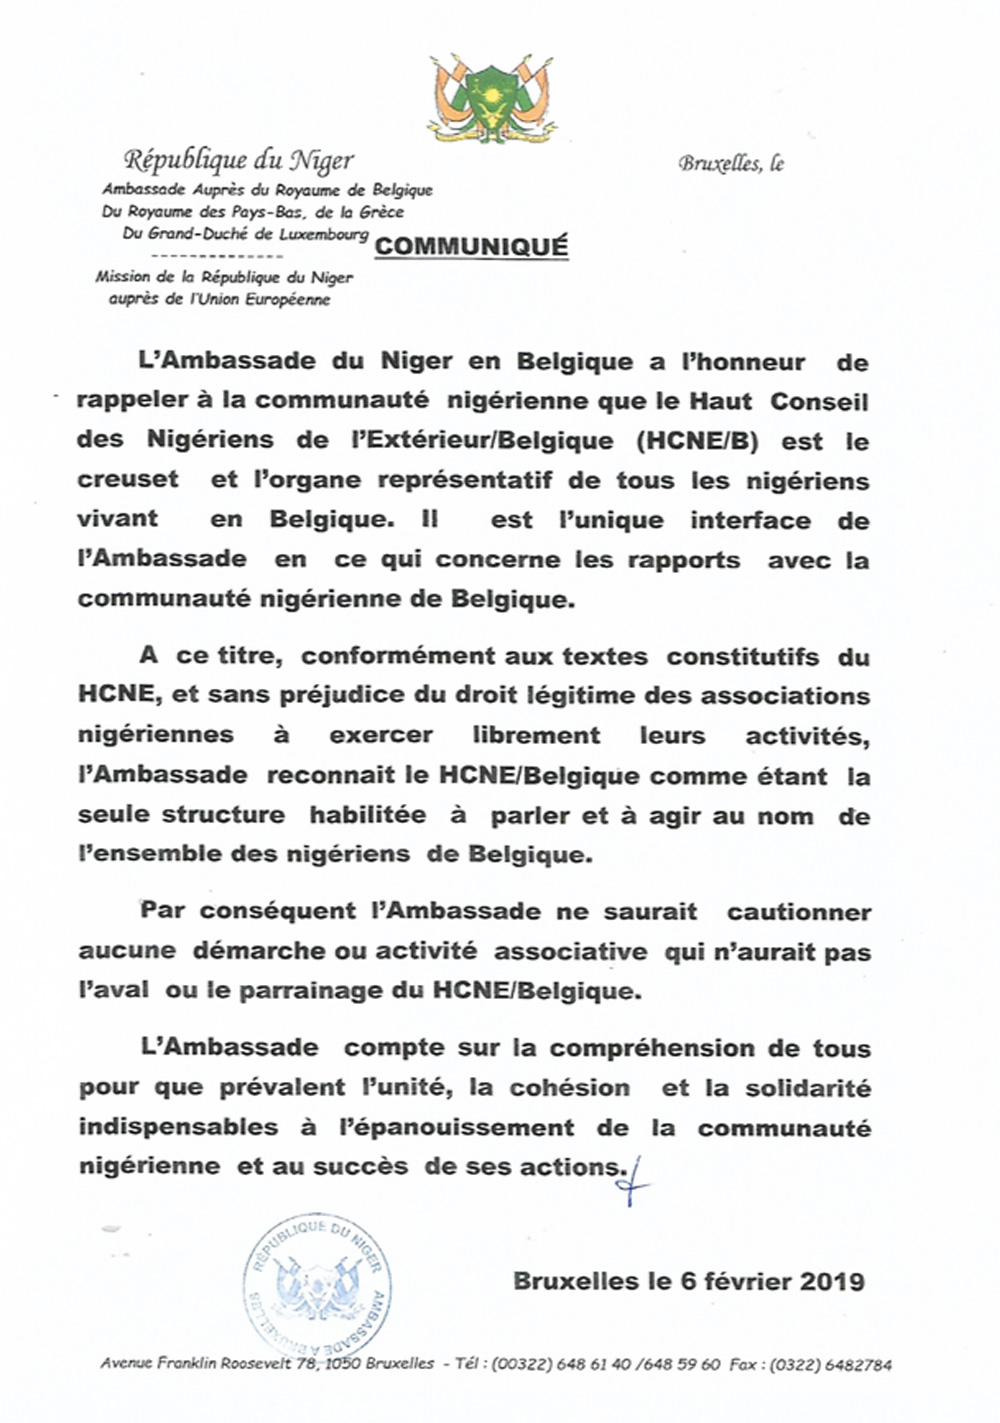 Amabassade-Niger-Bruxellles-Communique-HNCB-02